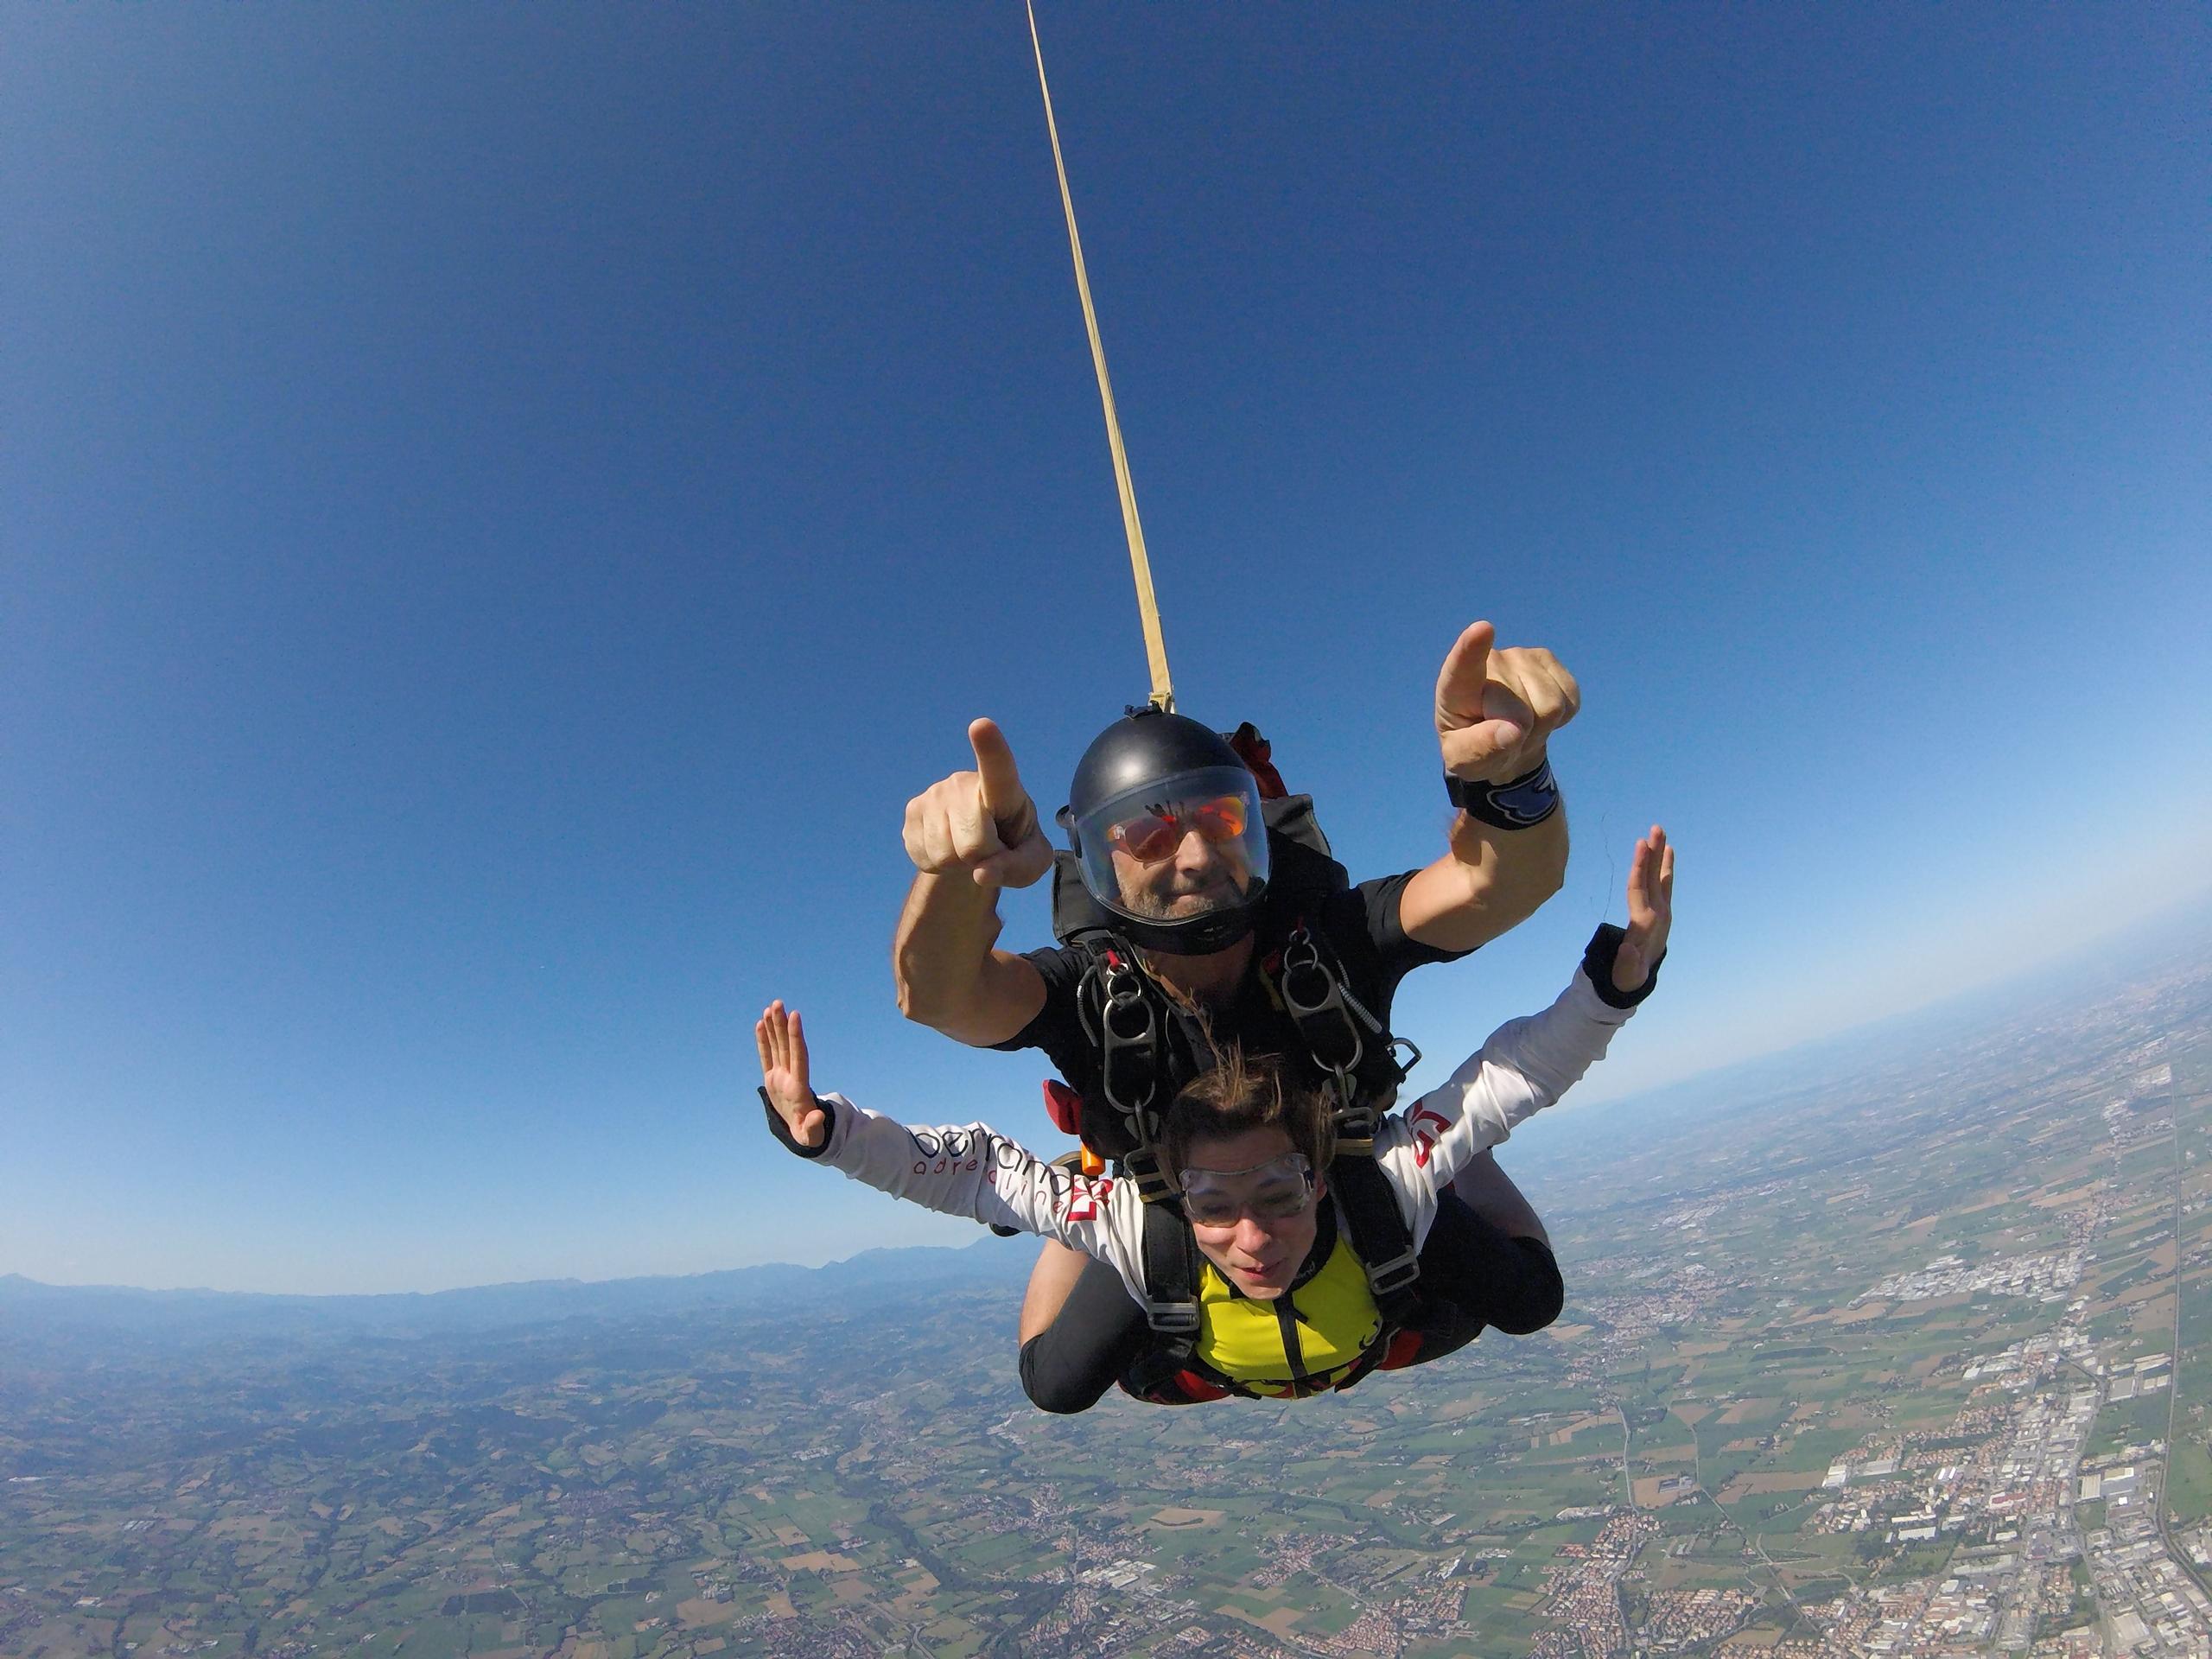 passeggero tandem e istruttore di paracadutismo tandem si divertono effettuando un lancio col paracadute Reggio Emilia